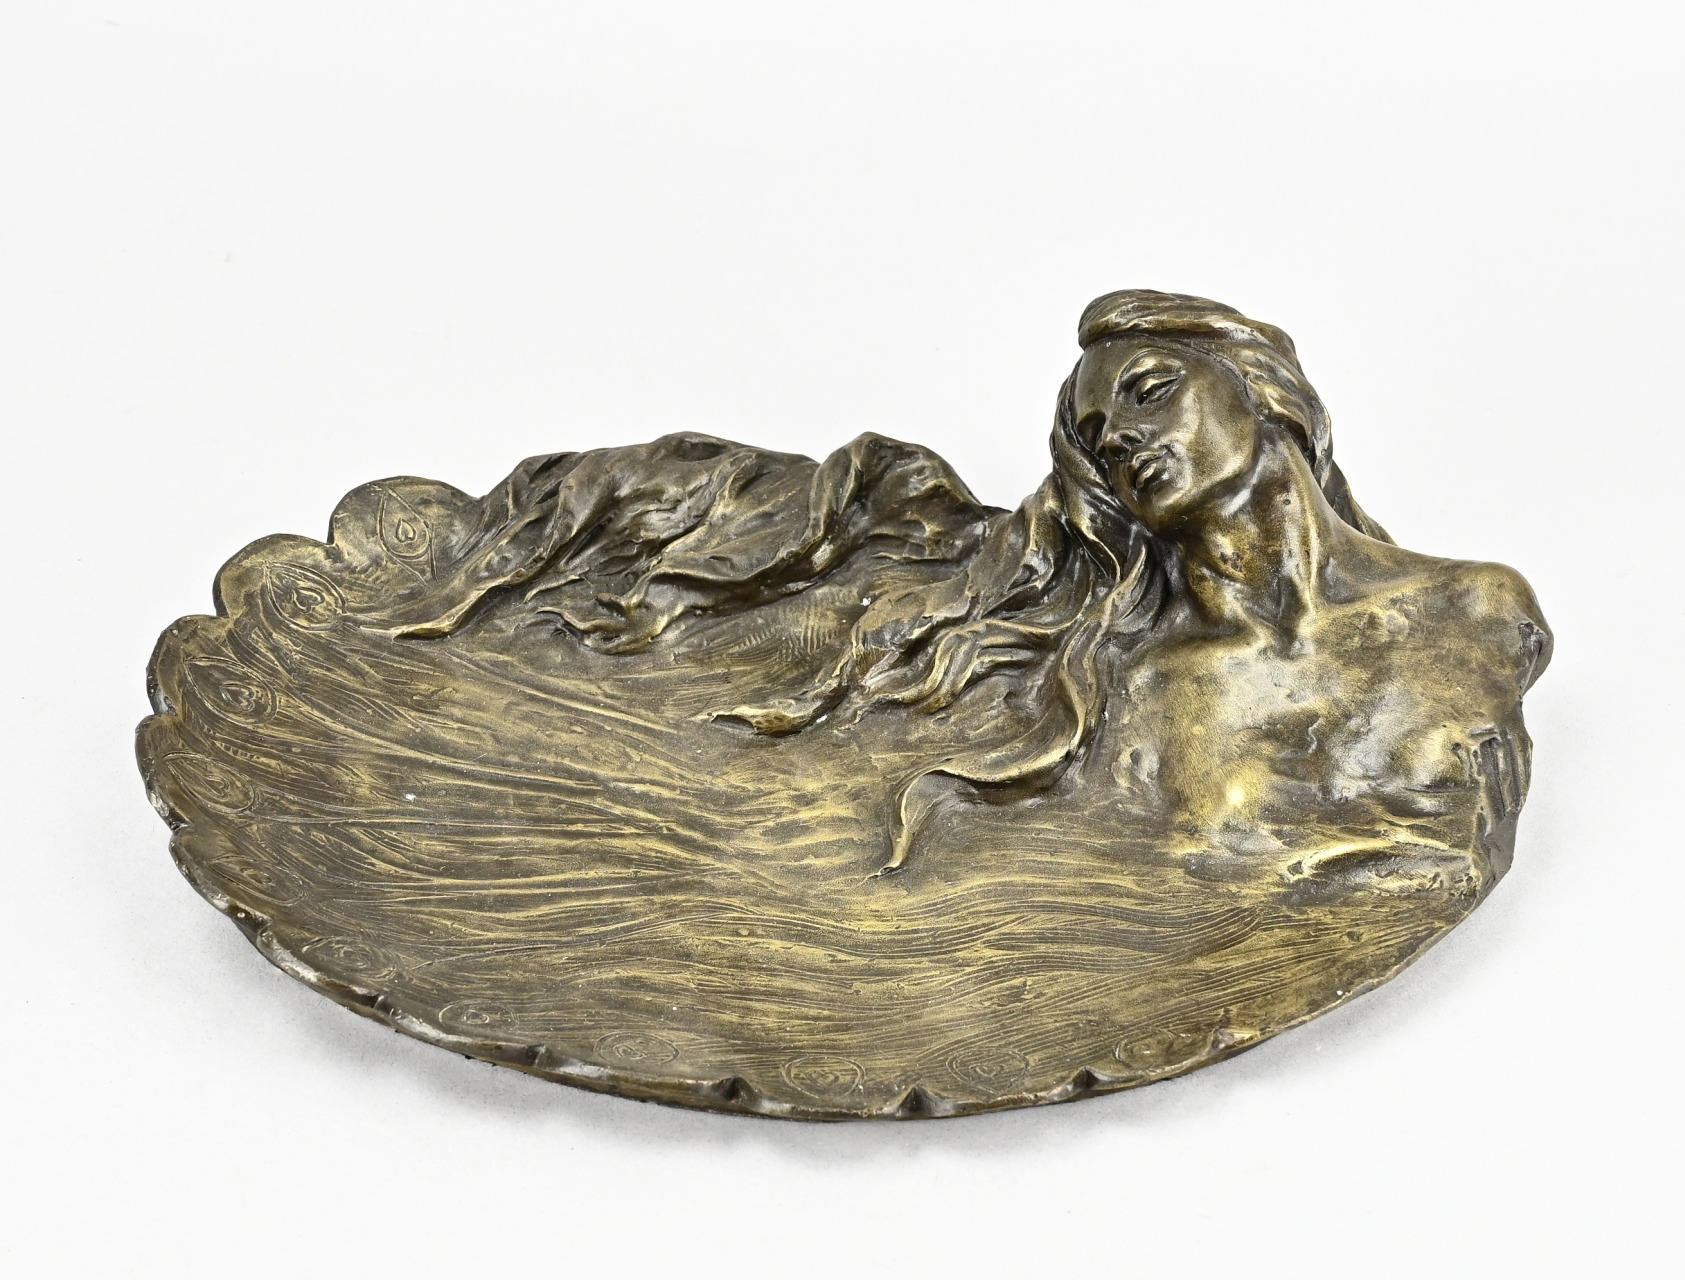 Bronze bowl in Art Nouveau style